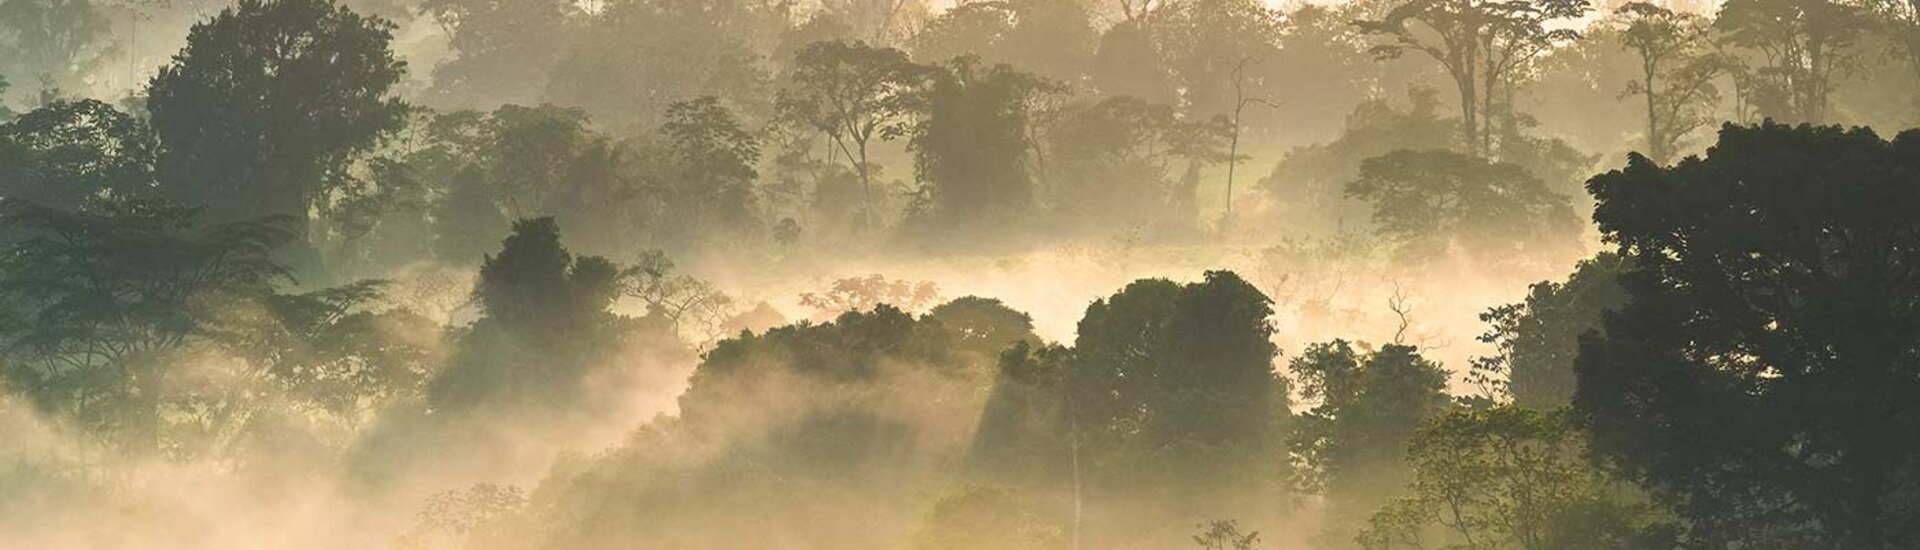 Arenal Vulkan: Regenwald im Nebel